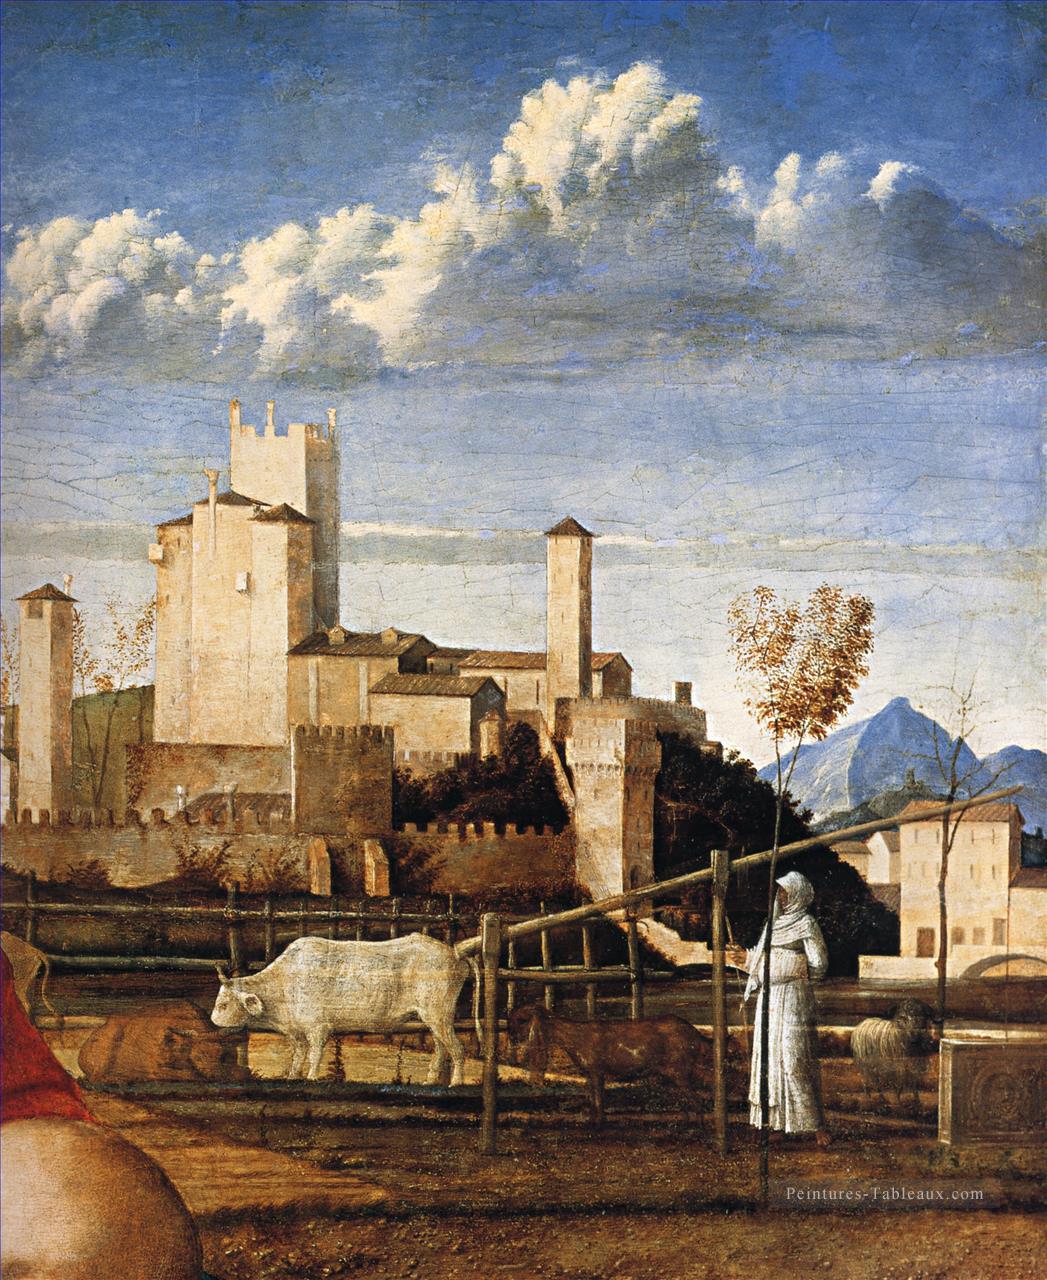 La vierge et l’enfant dt1 Renaissance Giovanni Bellini Peintures à l'huile